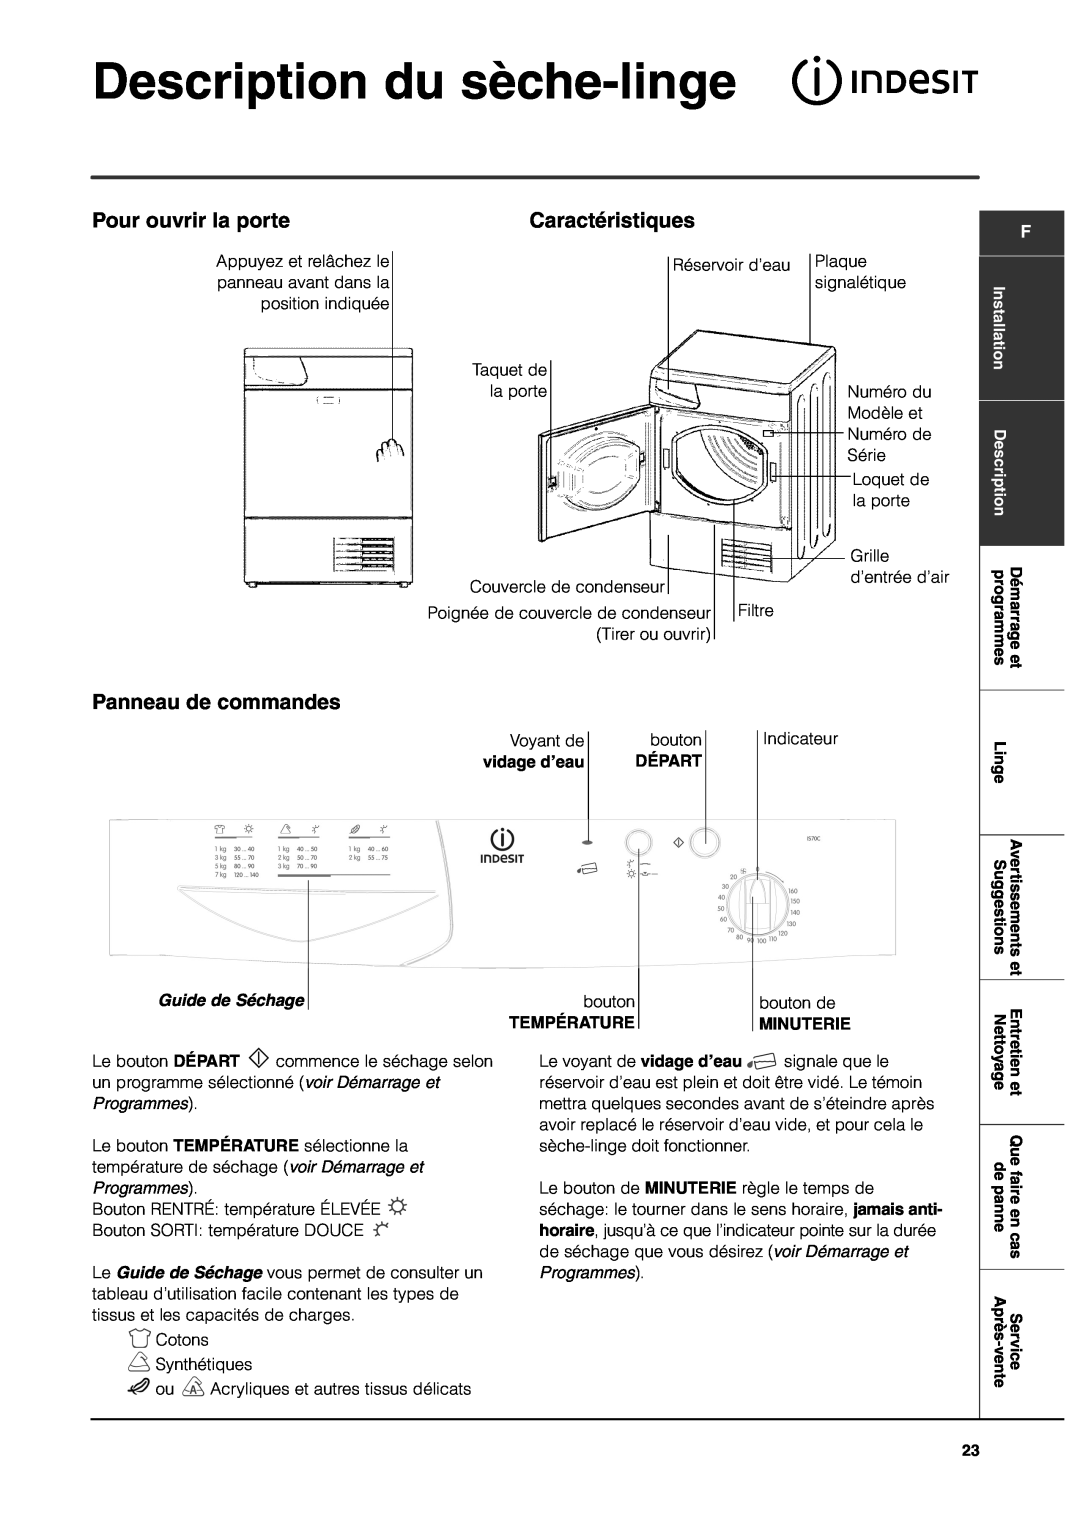 Indesit IS70C Description du sèche-linge, Pour ouvrir la porte, Caractéristiques, Panneau de commandes, Guide de Séchage 